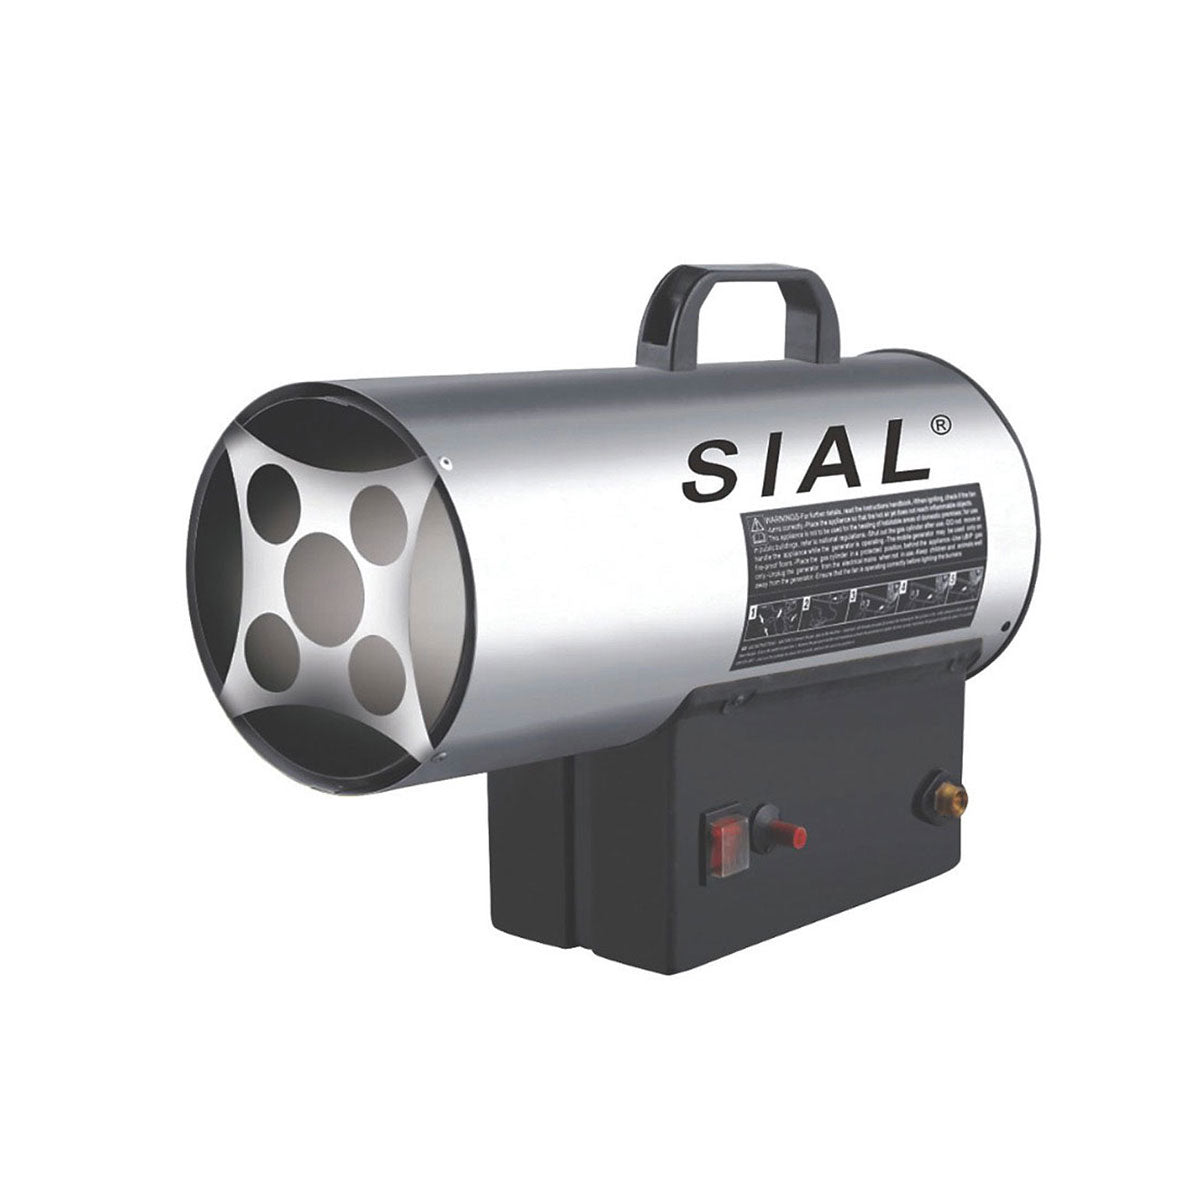 15kw Industrial Commercial Heaters Propane Gas Forced Space Workshop Garage  Fan